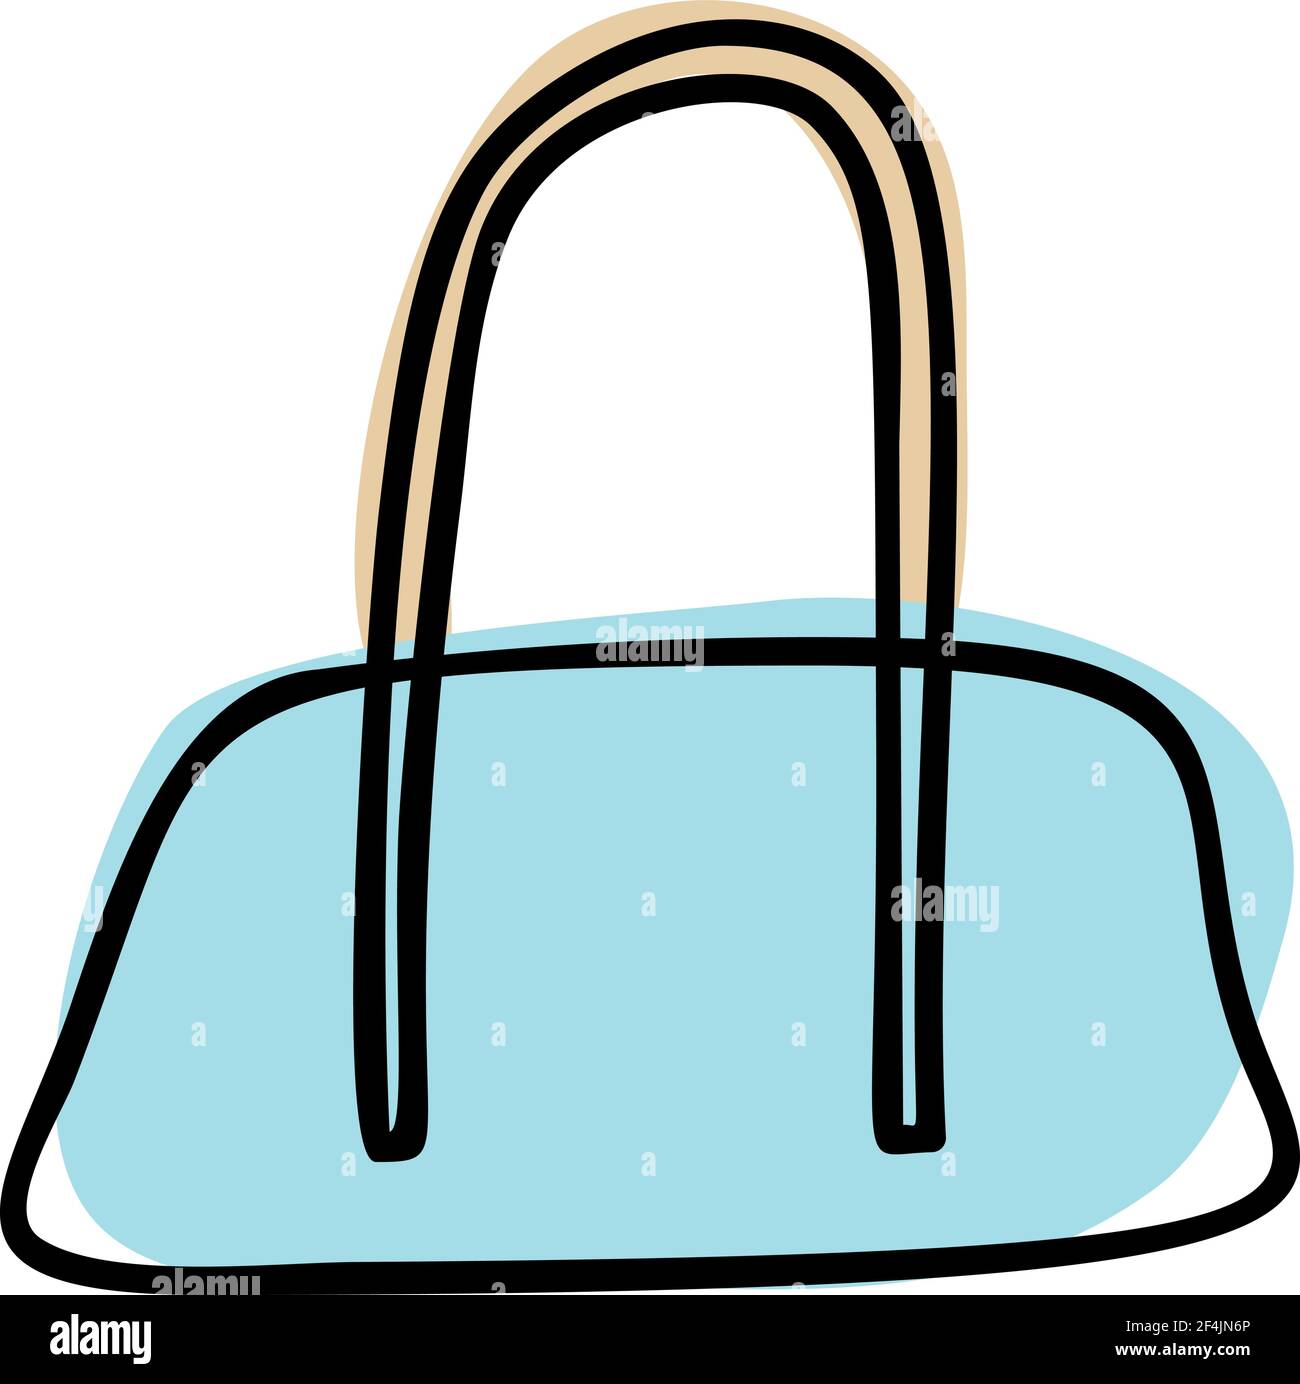 Bolsa de deporte con ruedas y sacada a mano. Ilustración vectorial de la  bolsa de viaje azul. Dibujo de bolsa de viaje aislada sobre blanco. Objeto  de turismo de verano. Bolsa para